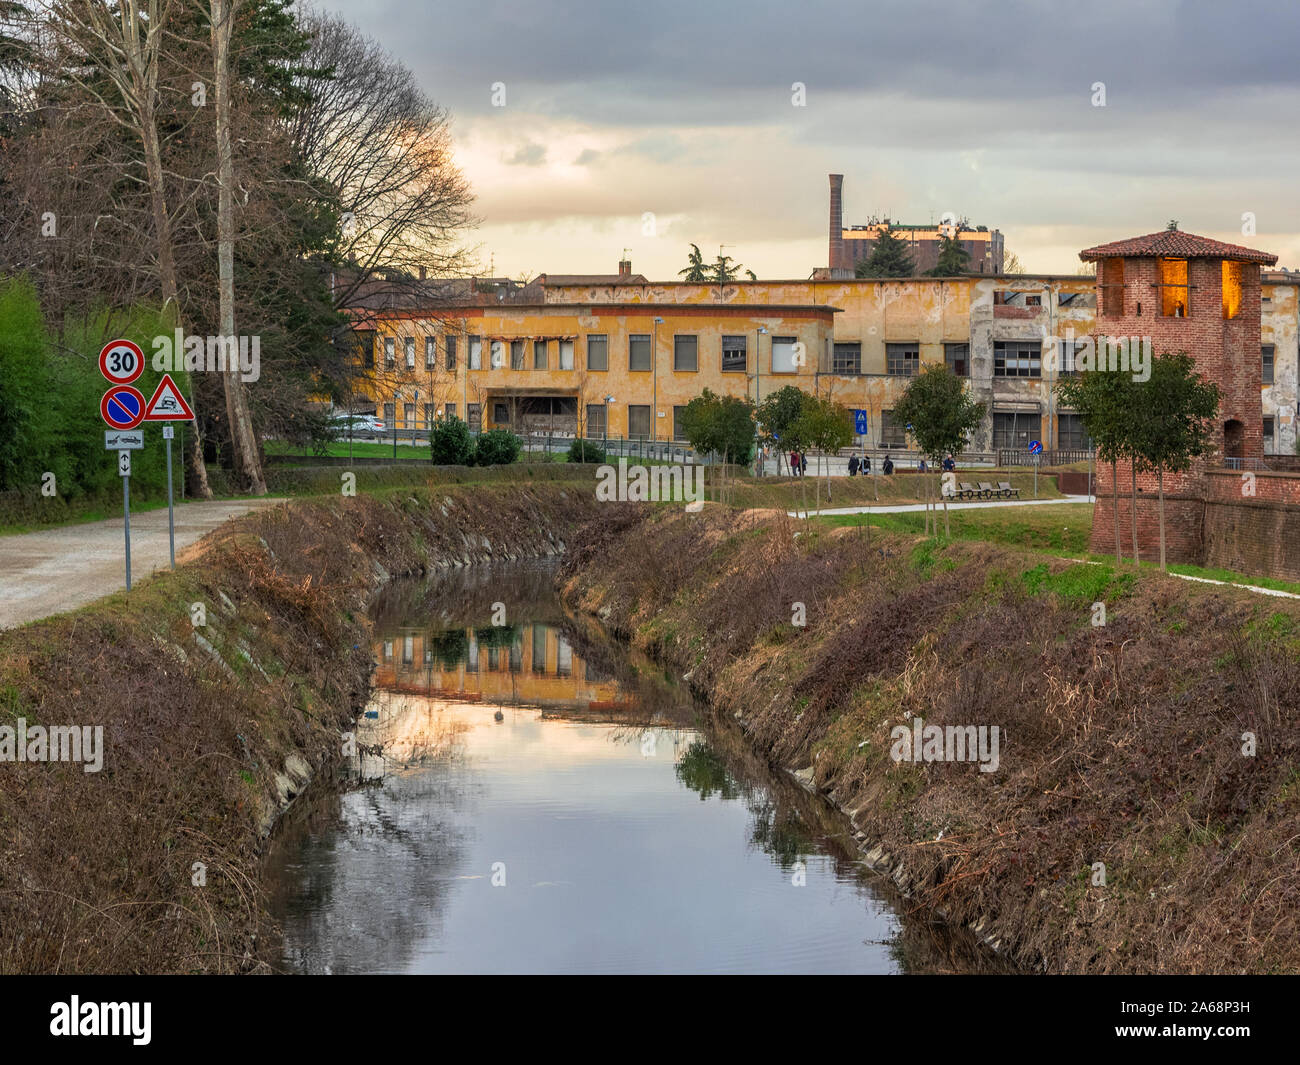 Pistes cyclables pour piétons le long des berges de la rivière dans un parc en Lombardie, Italie Banque D'Images